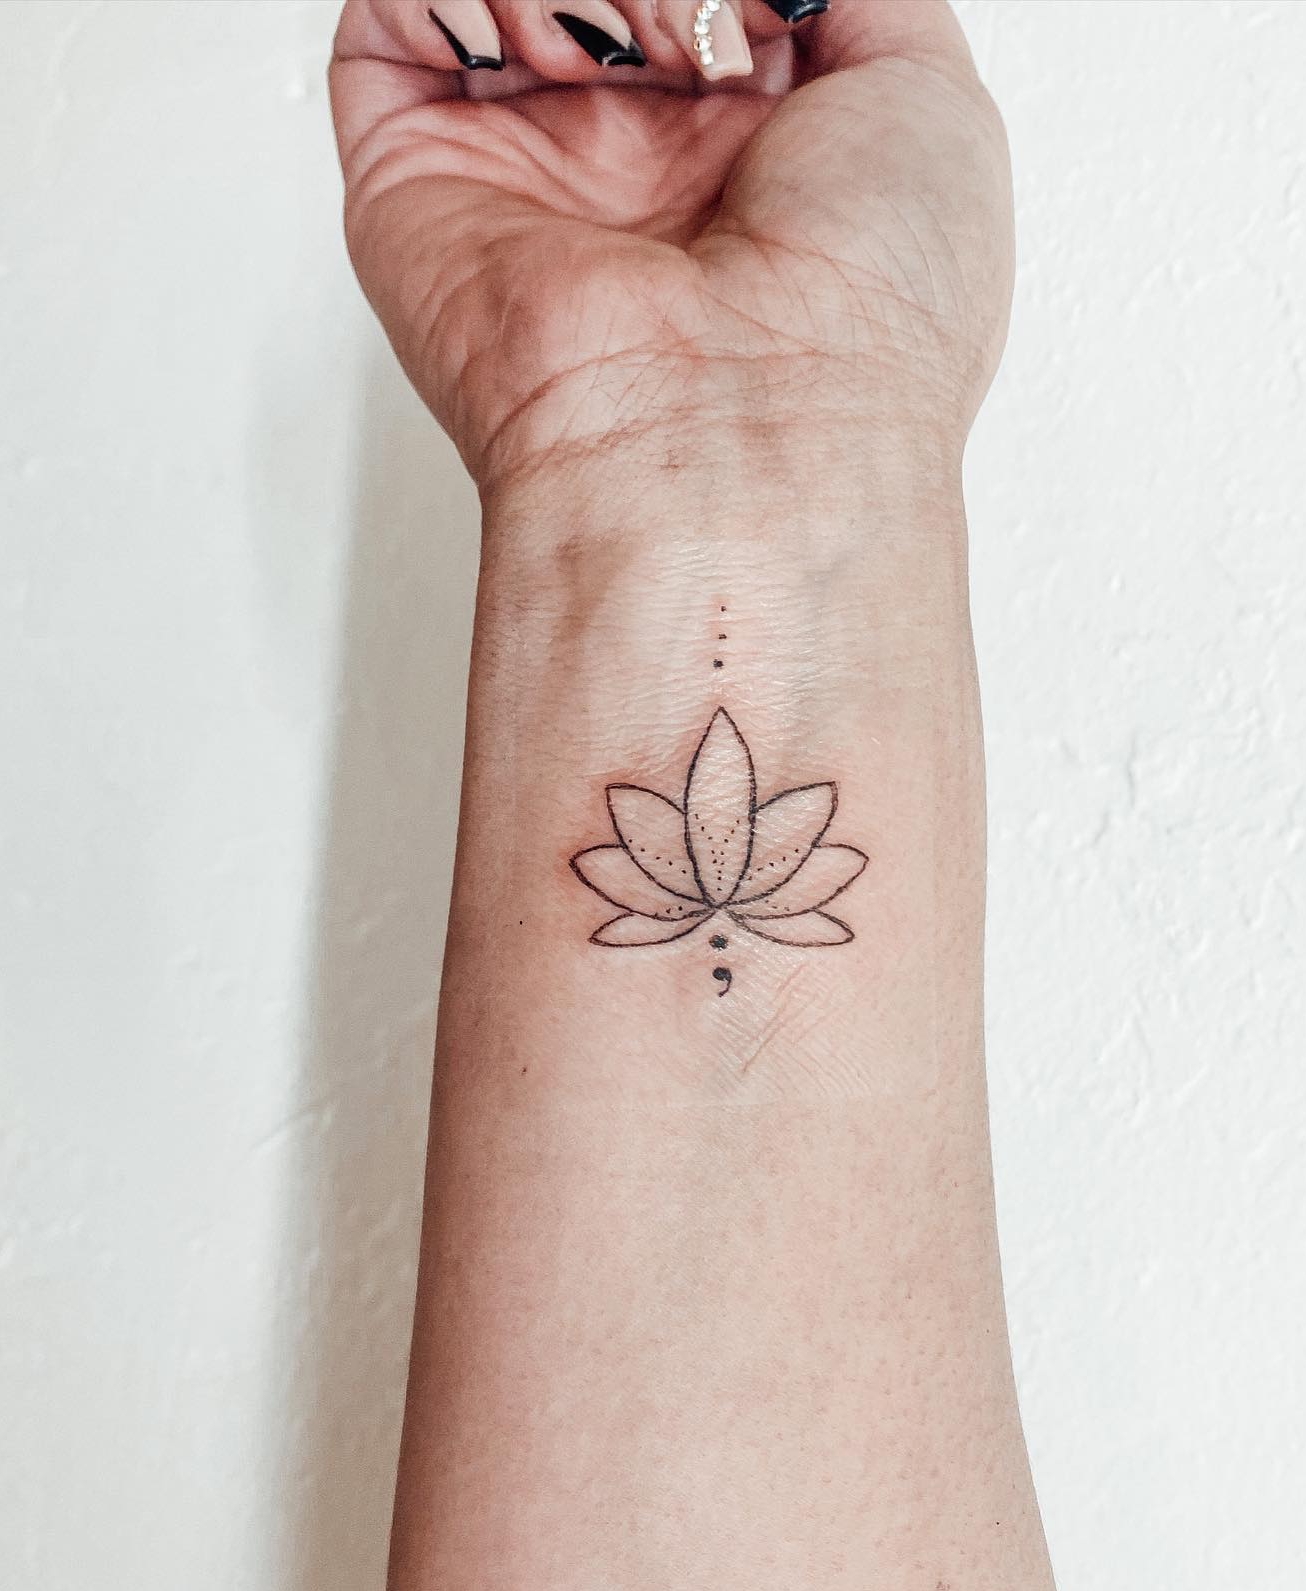 Lotus Semicolon Tattoo on Wrist